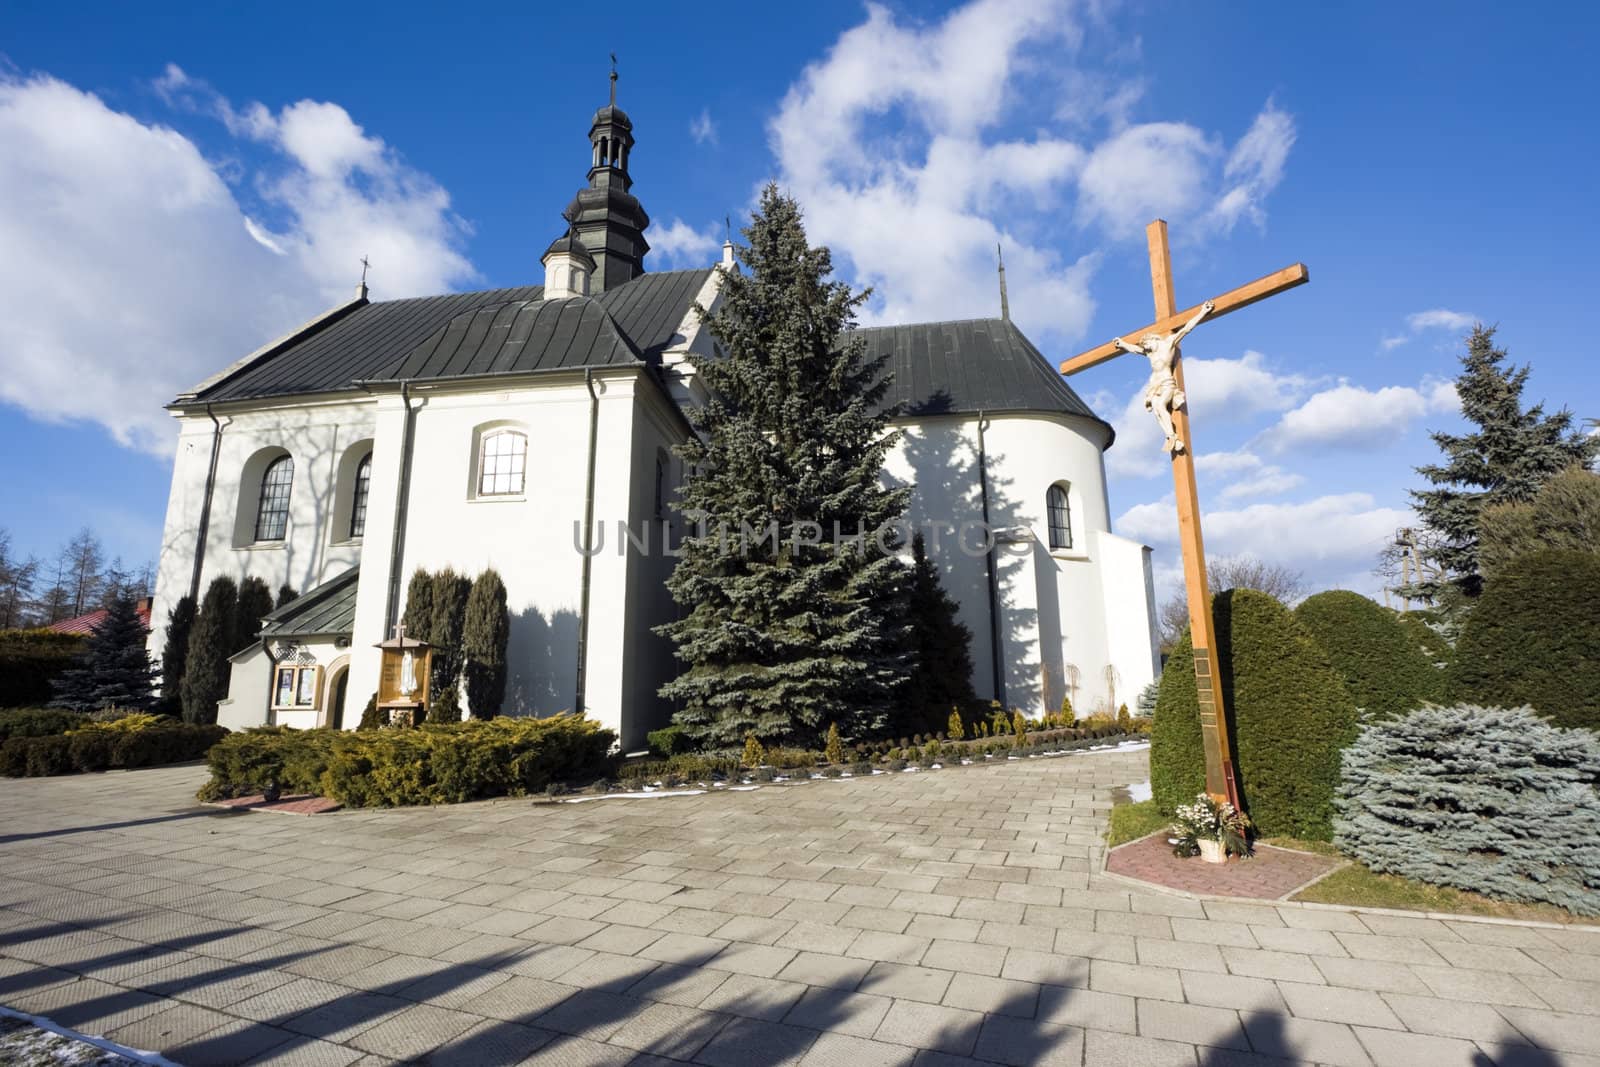 Church sw. Piotra i Pawla in Kije, Pincz�w County, Poland. Build in 1120.